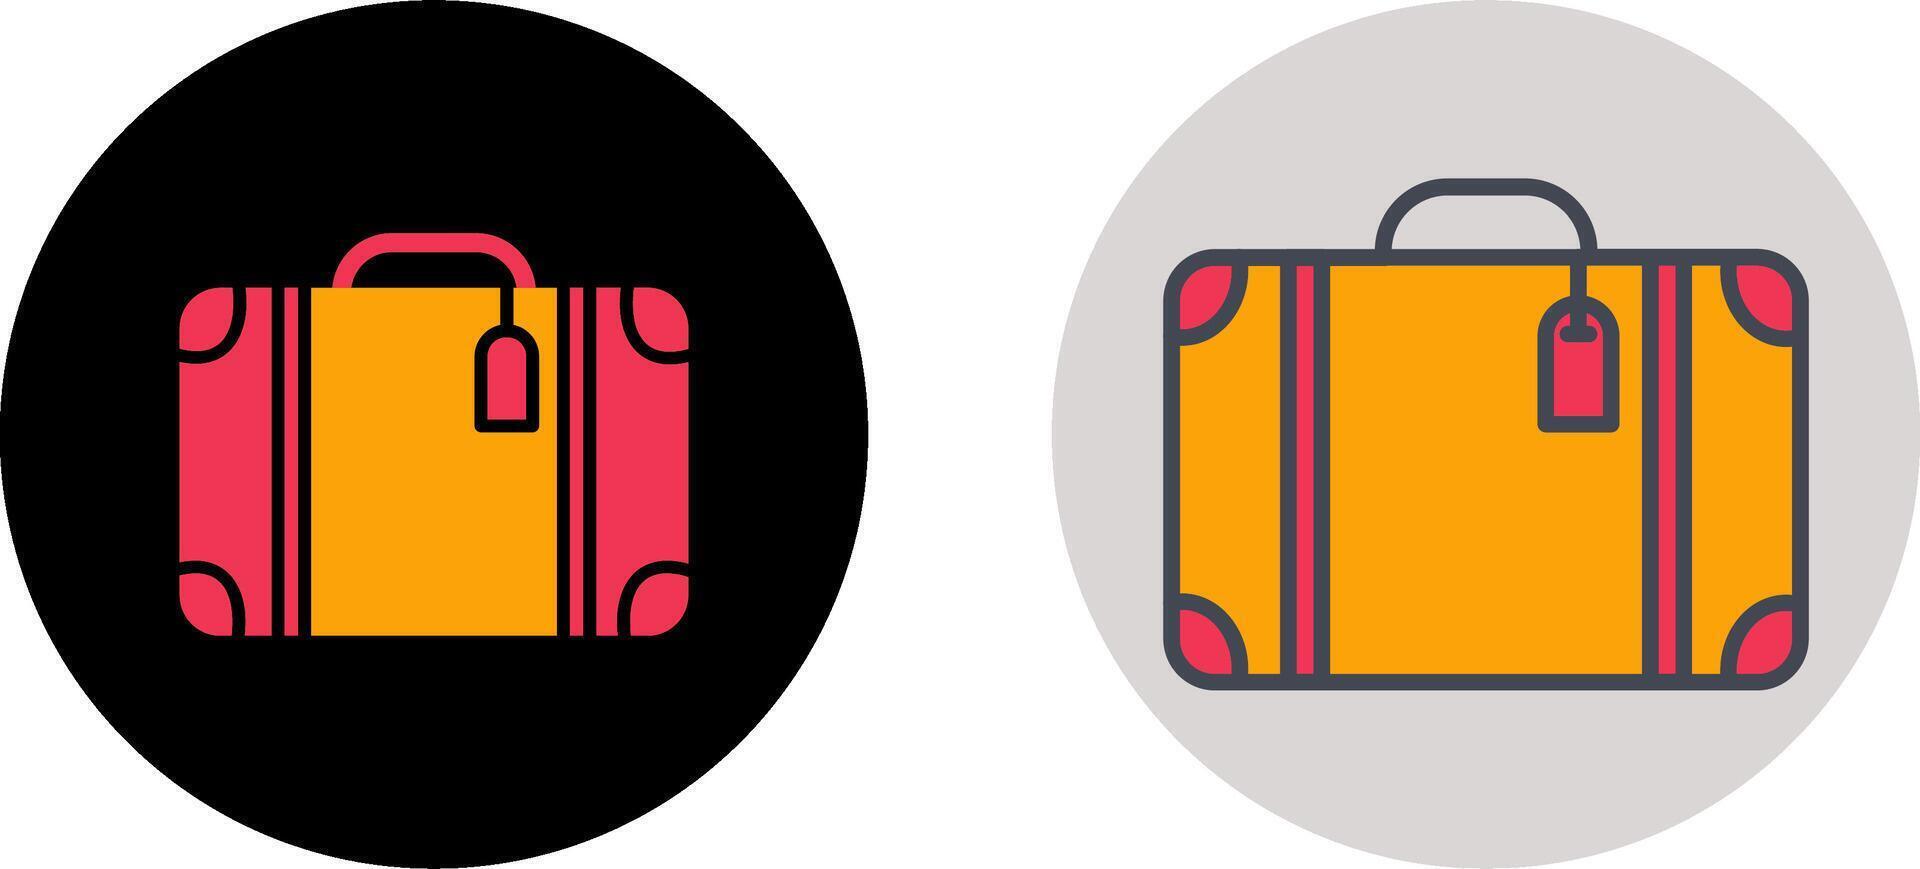 conception d'icône de valise vecteur